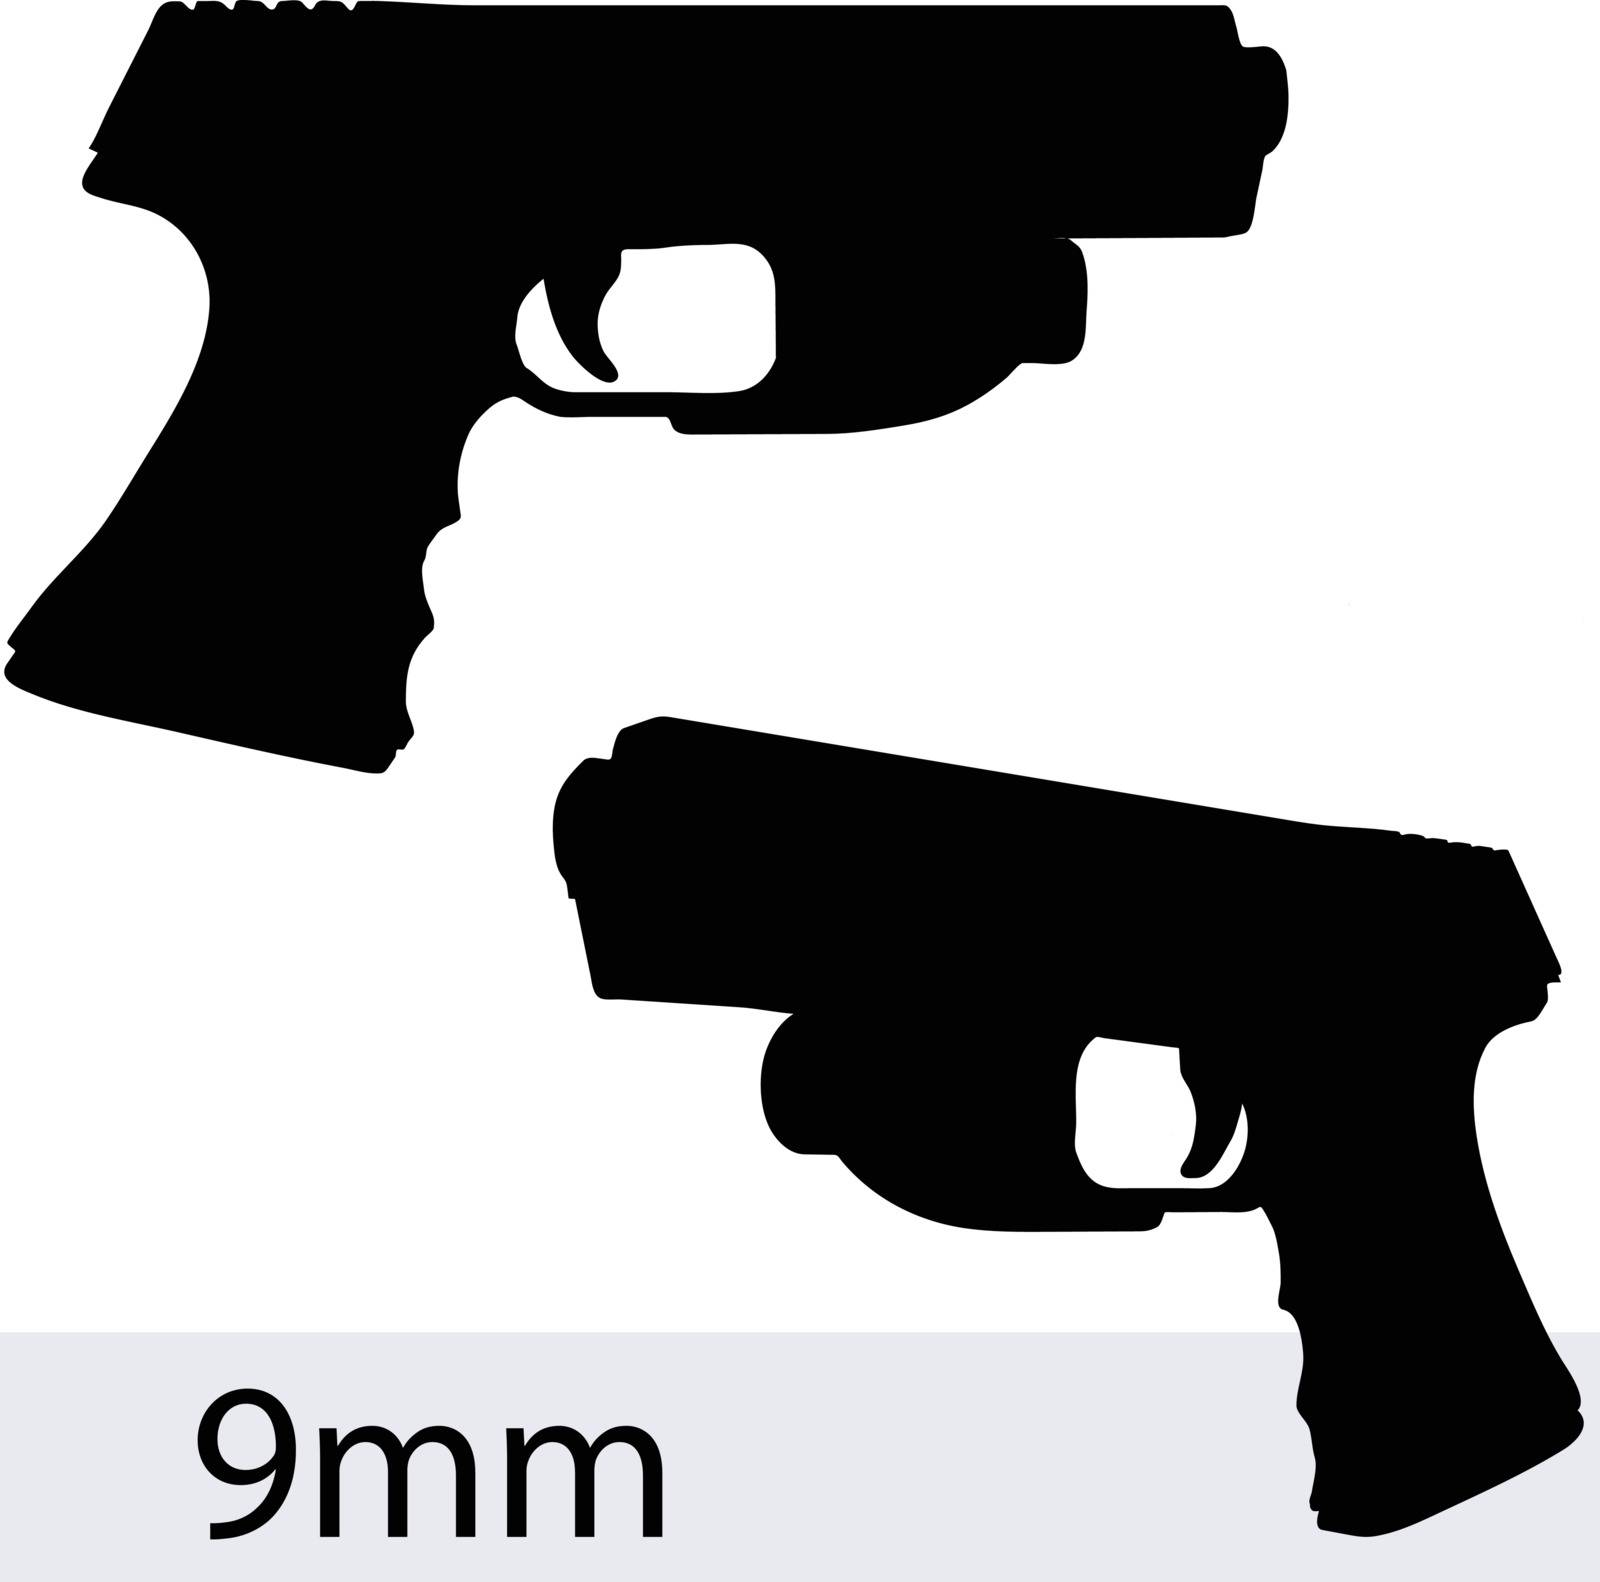 EPS 10 vector illustration of object gun on white background